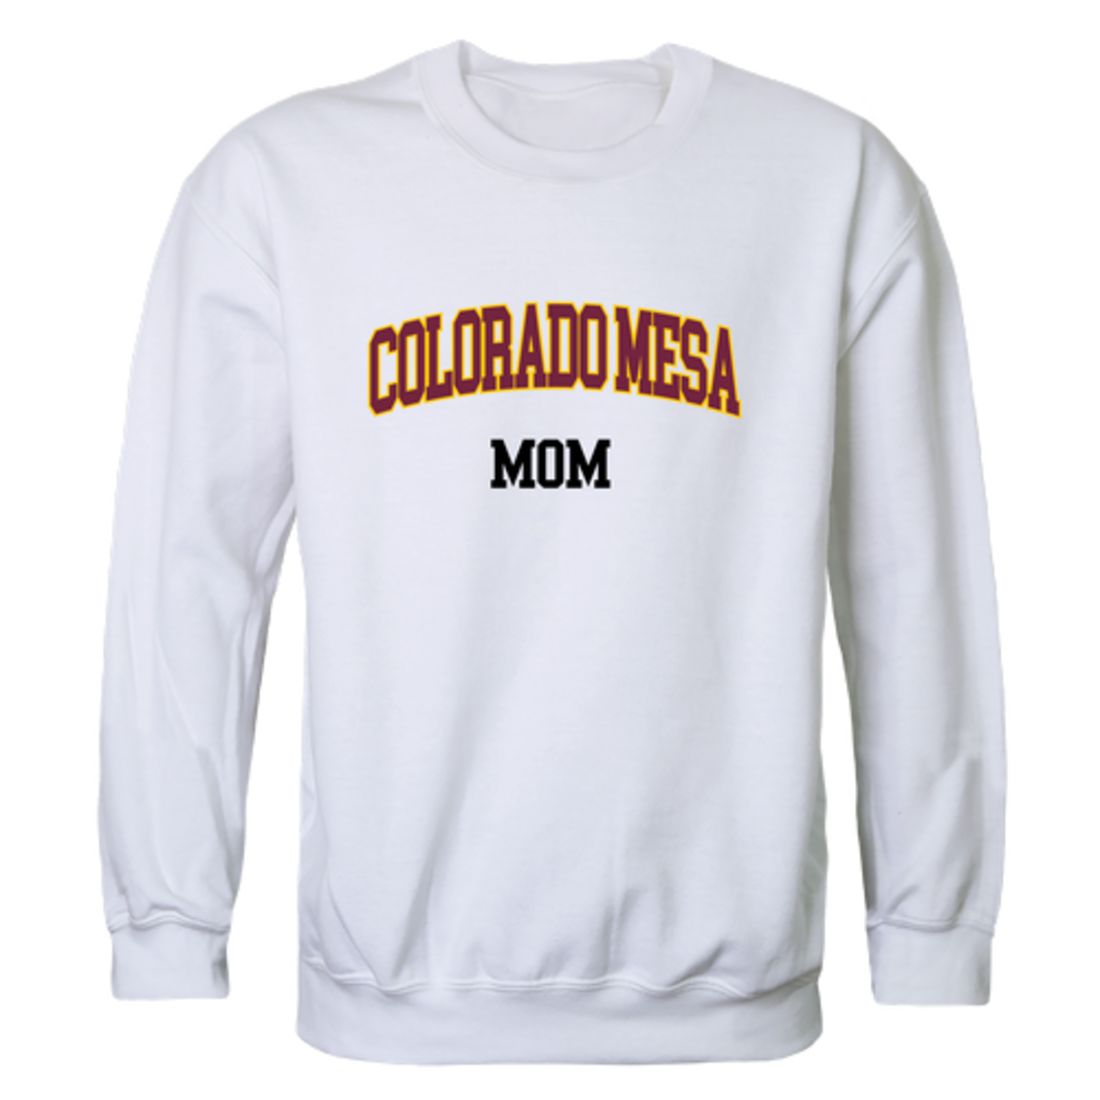 CMU Colorado Mesa University Maverick Mom Fleece Crewneck Pullover Sweatshirt Heather Grey Small-Campus-Wardrobe